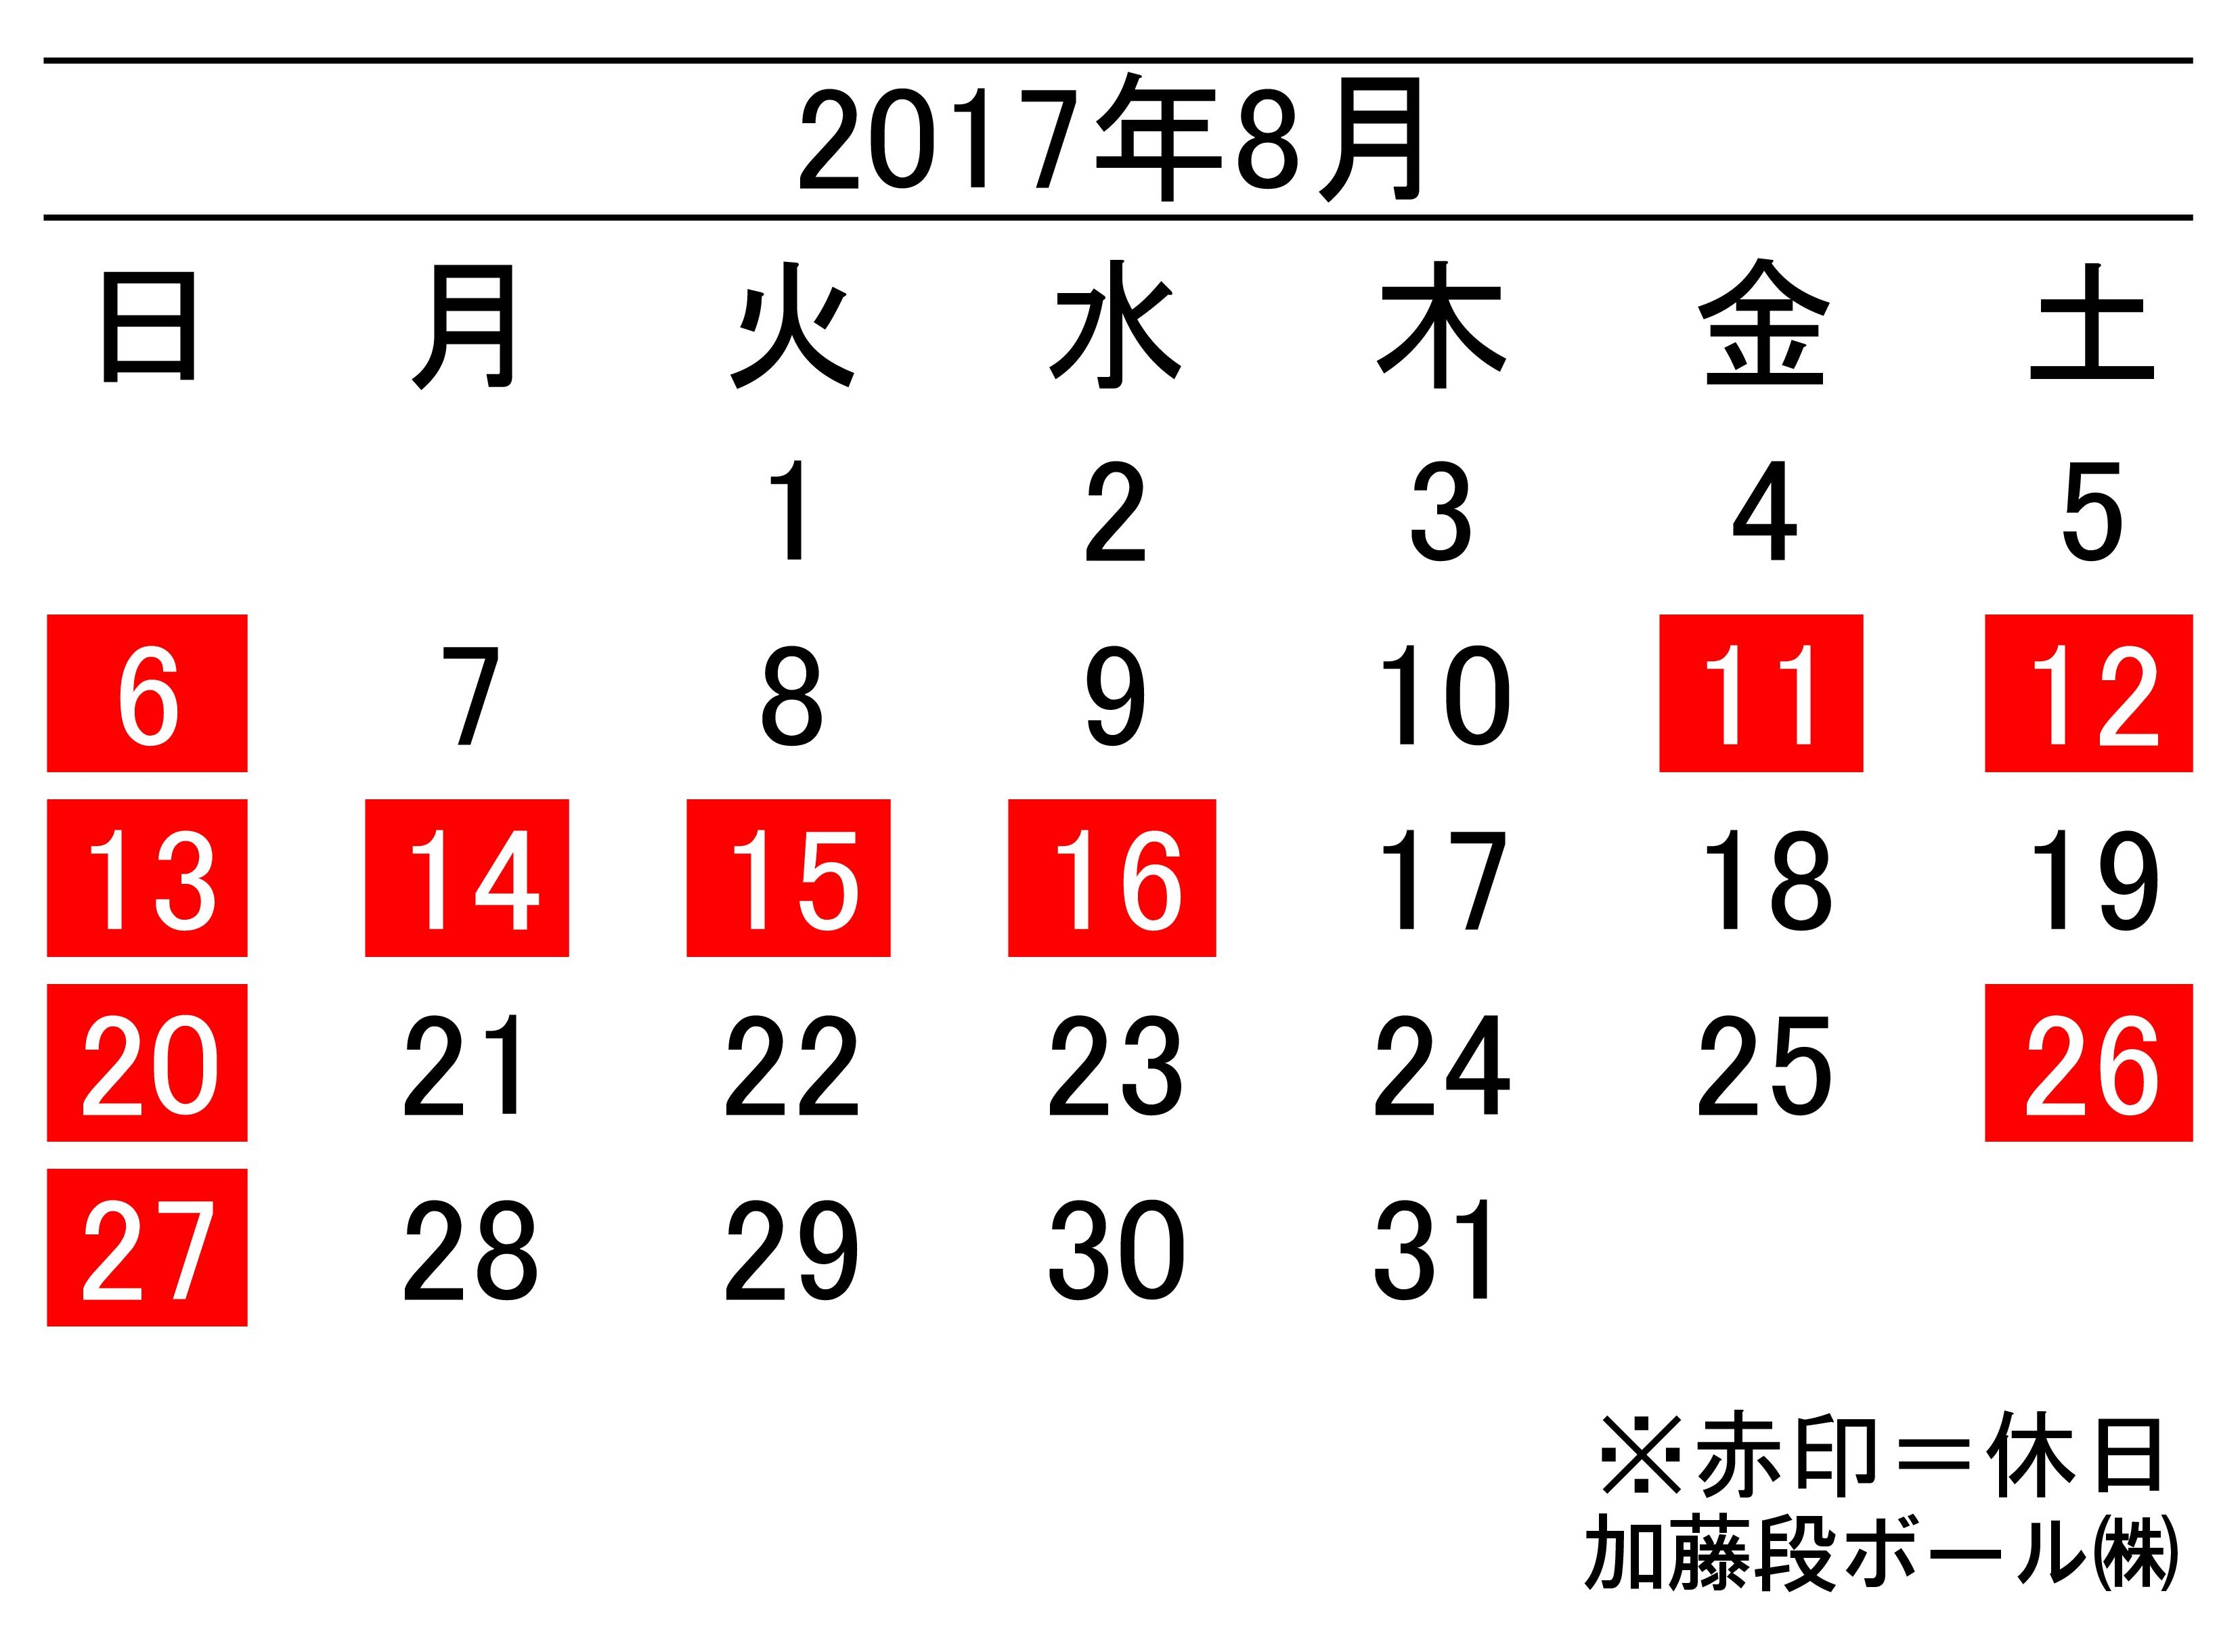 2017年8月度営業日カレンダー 加藤段ボール株式会社 千葉 福島 神奈川を中心に段ボール製品 梱包資材の製造と販売